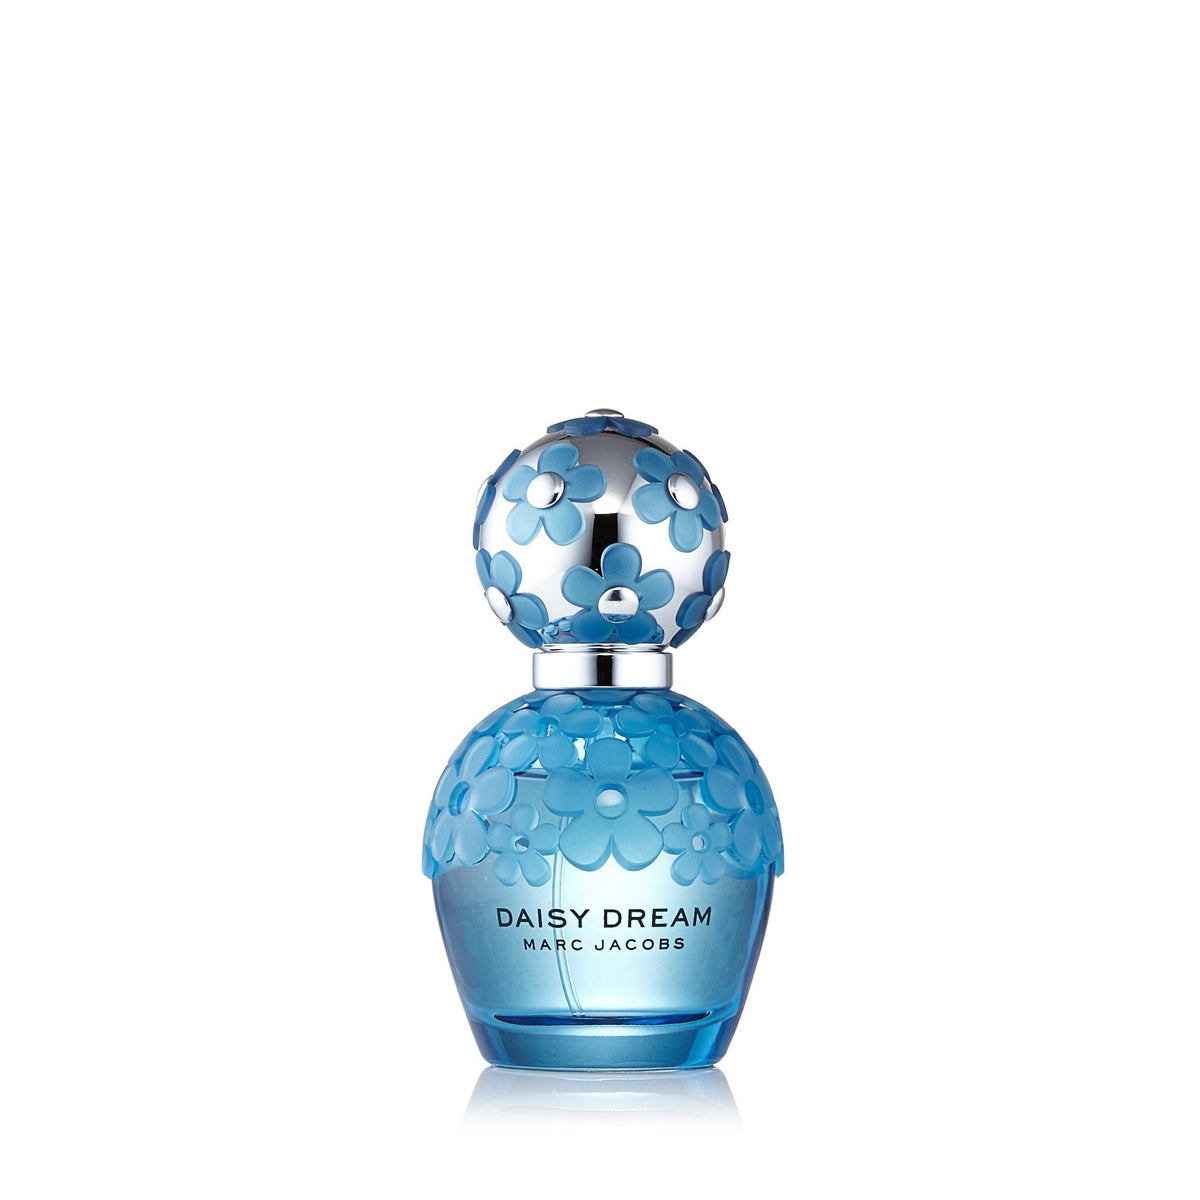 Daisy Dream Forever Eau de Parfum Spray for Women by Marc Jacobs 1.7 oz.